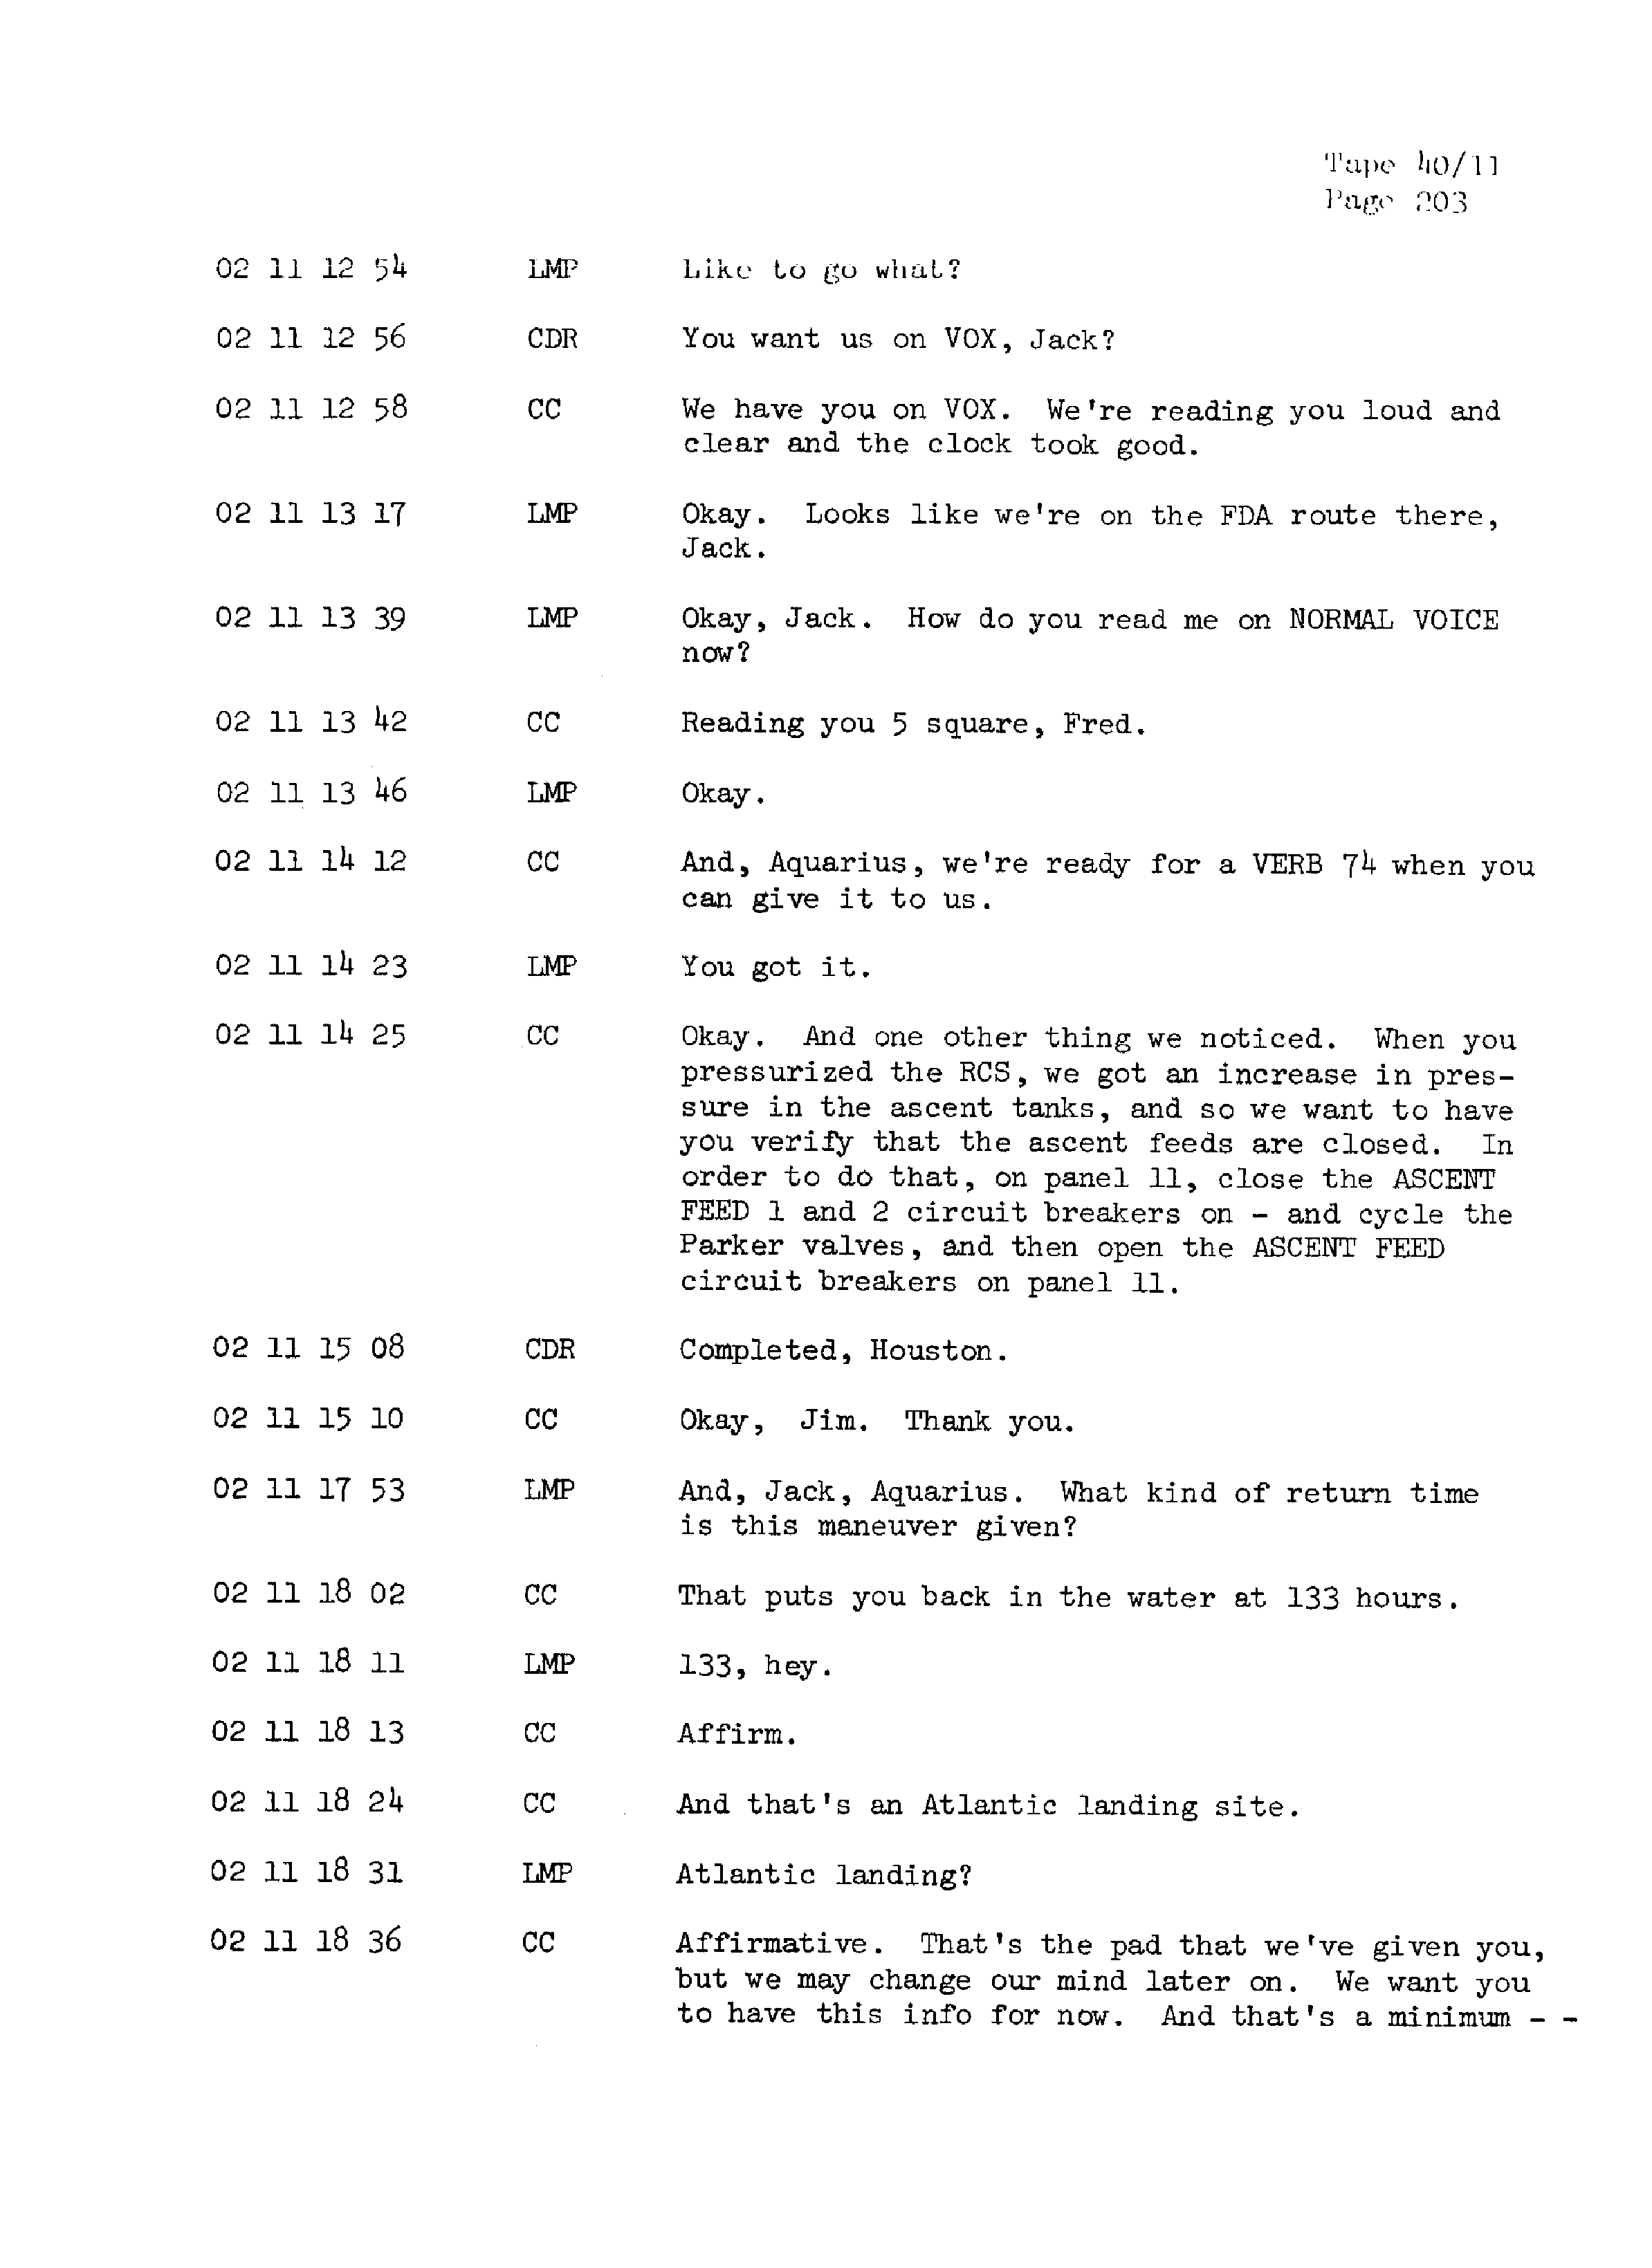 Page 210 of Apollo 13’s original transcript